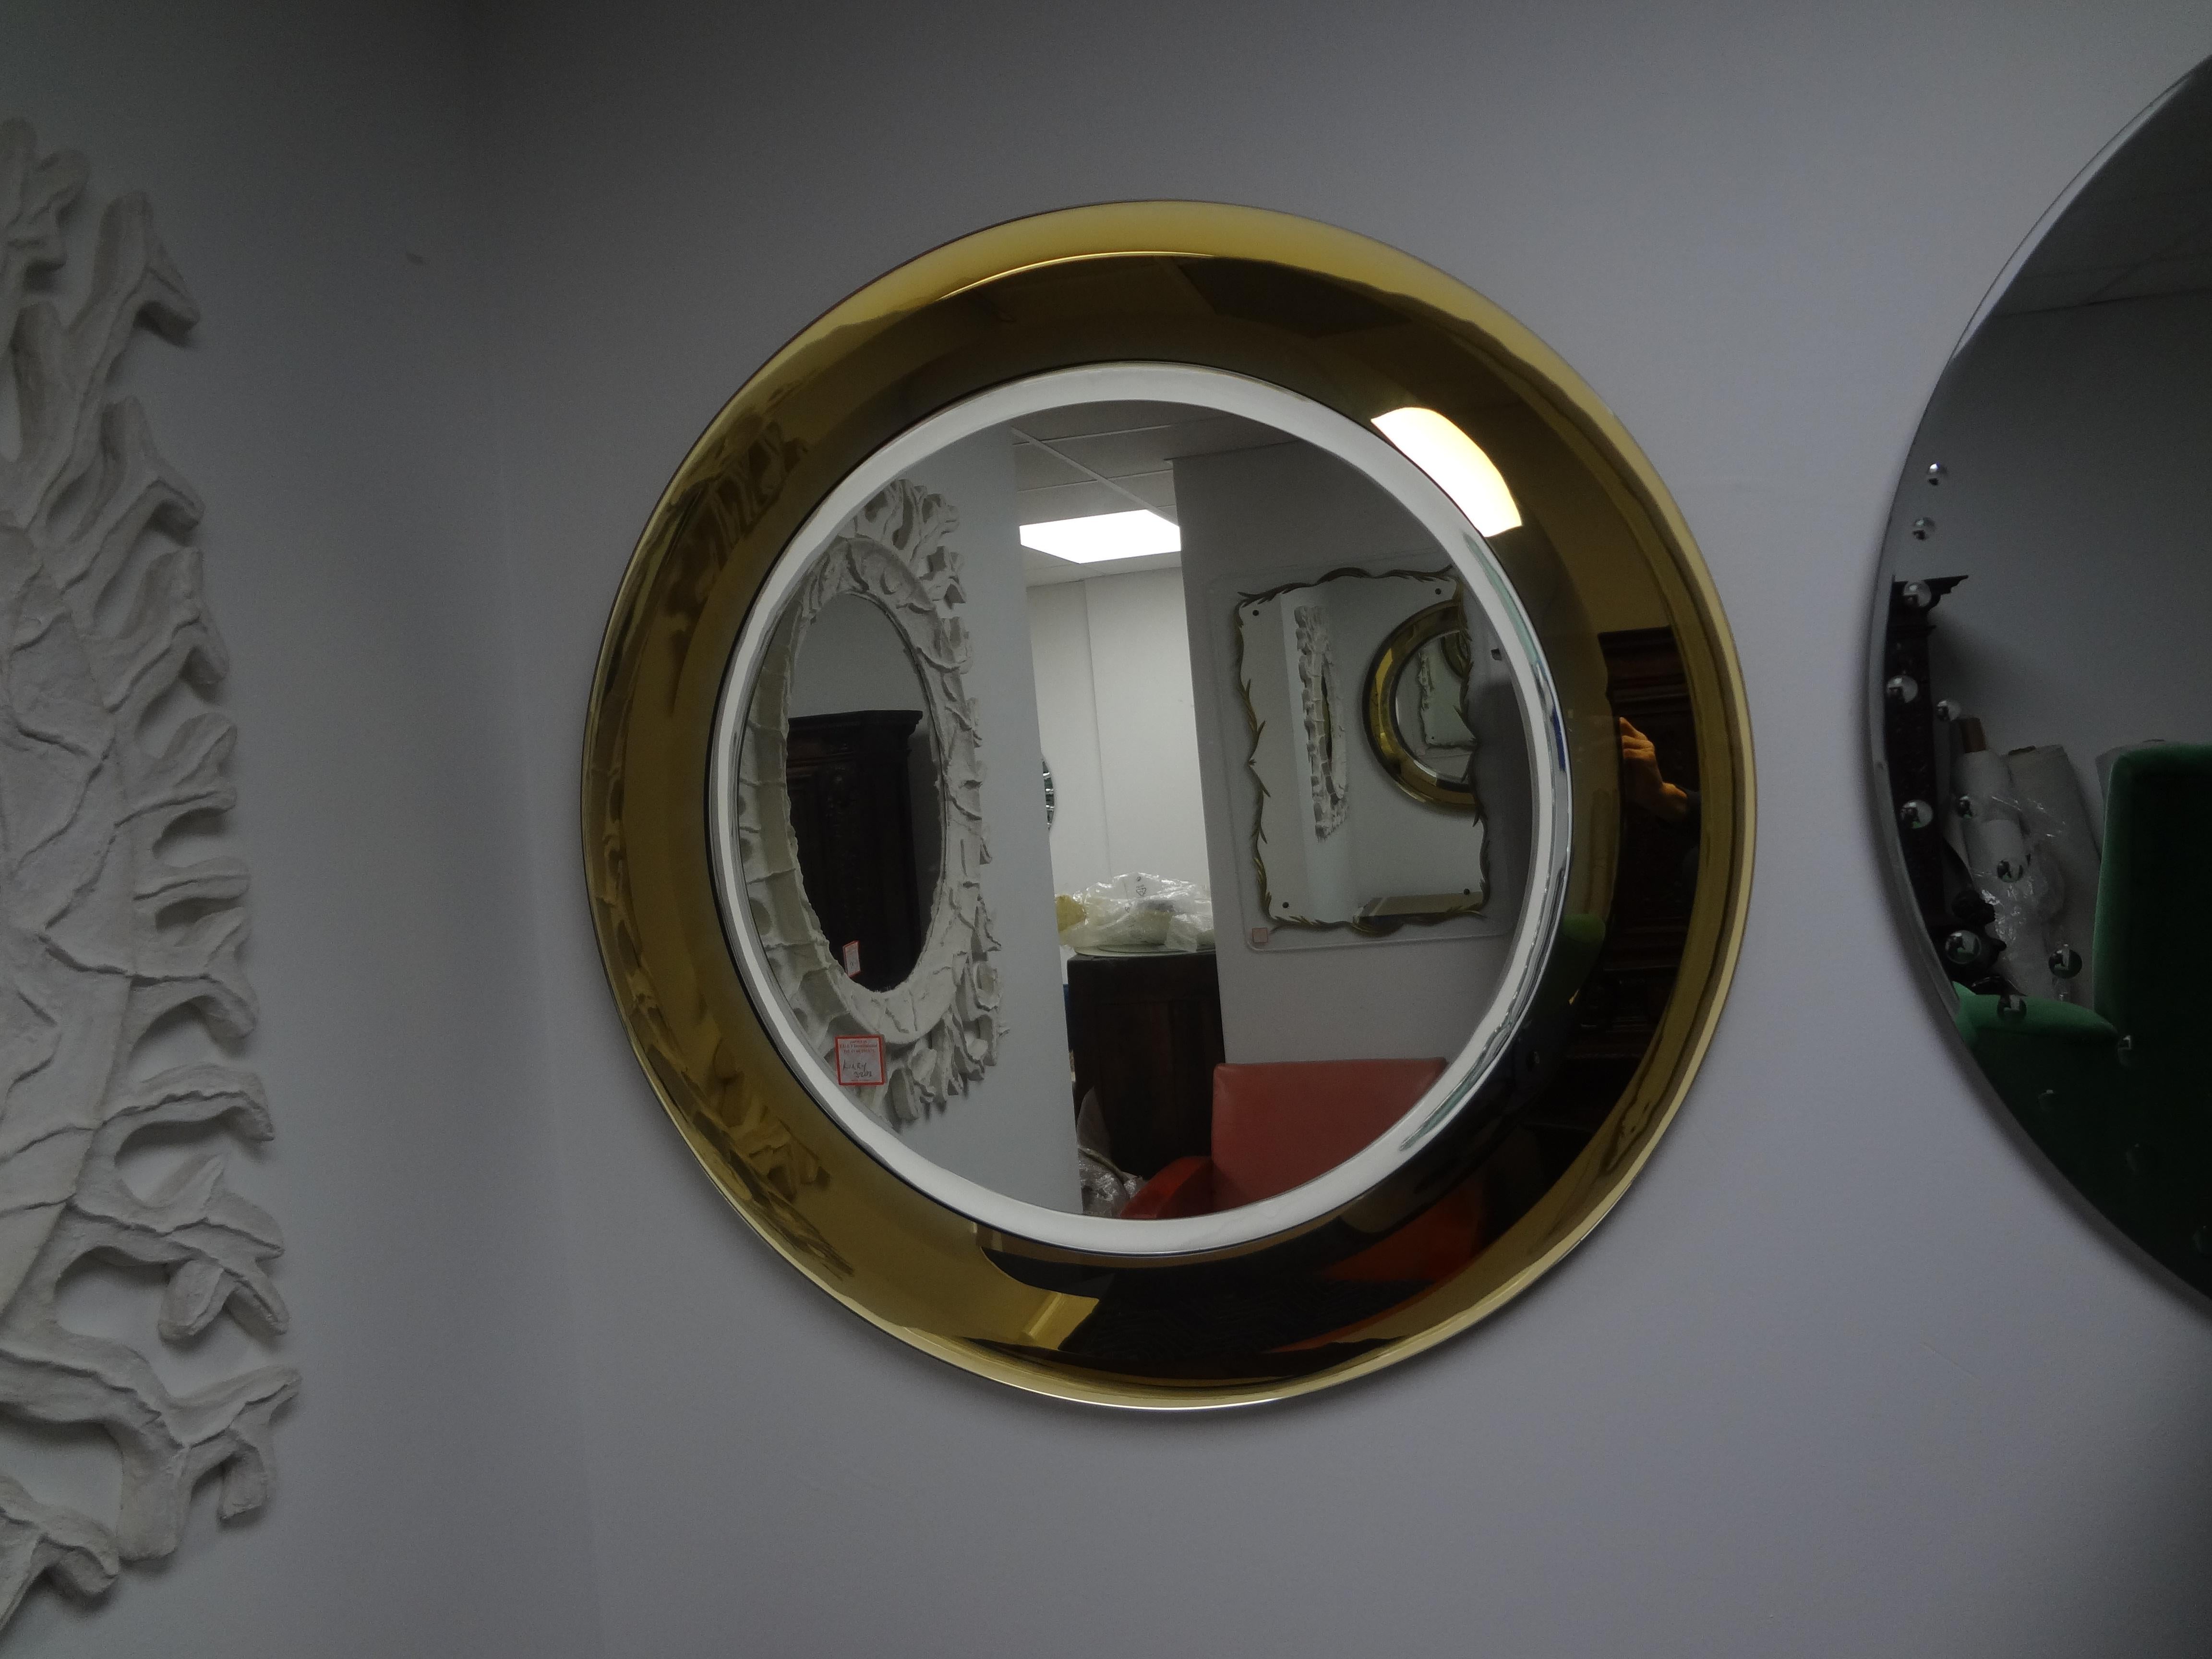 Paire de miroirs biseautés attribués à Max Ingrand pour Fontana Arte.
Difficile à trouver, cette paire de miroirs attribués de Fontana Arte en or, avec trois bandes extérieures biseautées en or entourant un miroir central biseauté en argent.
Ces